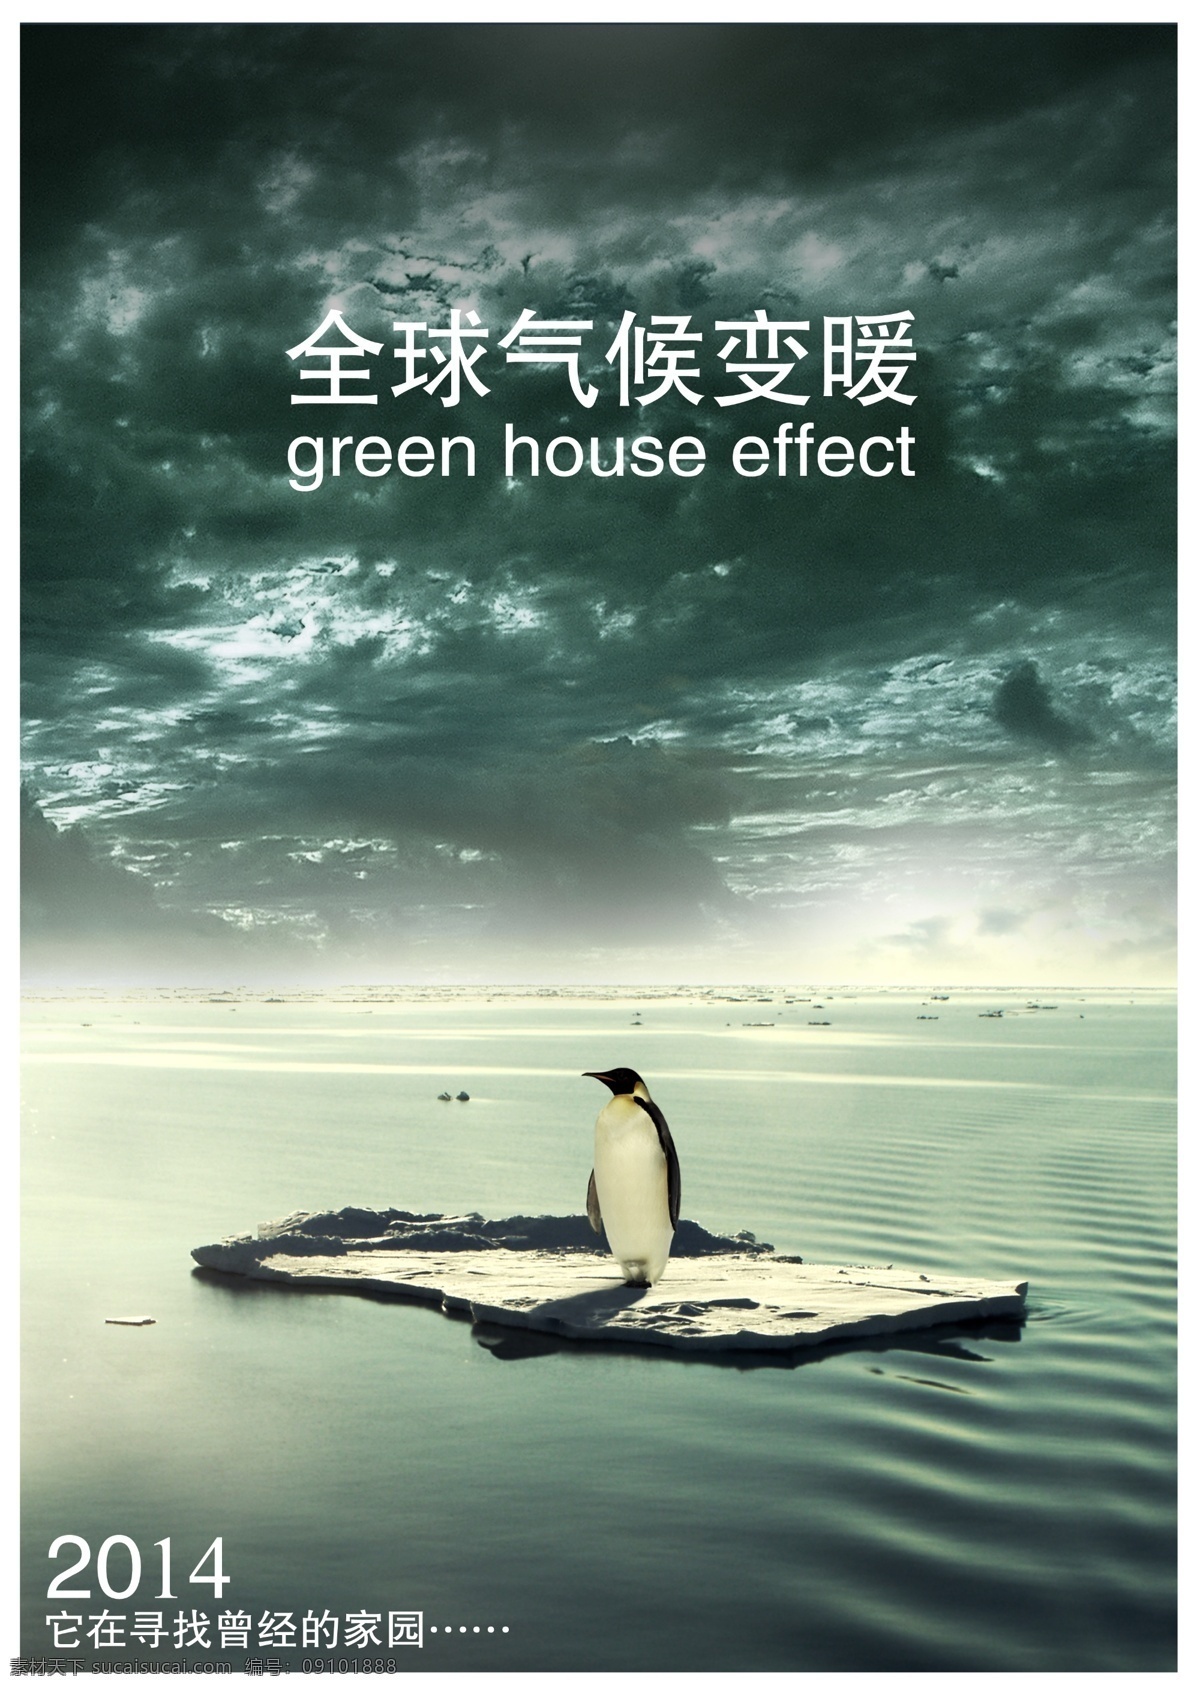 保护动物 保护环境 北极 冰块 地球 公益海报 广告设计模板 保护 环境 模板下载 保护环境模板 大西洋 企鹅 源文件 环保公益海报